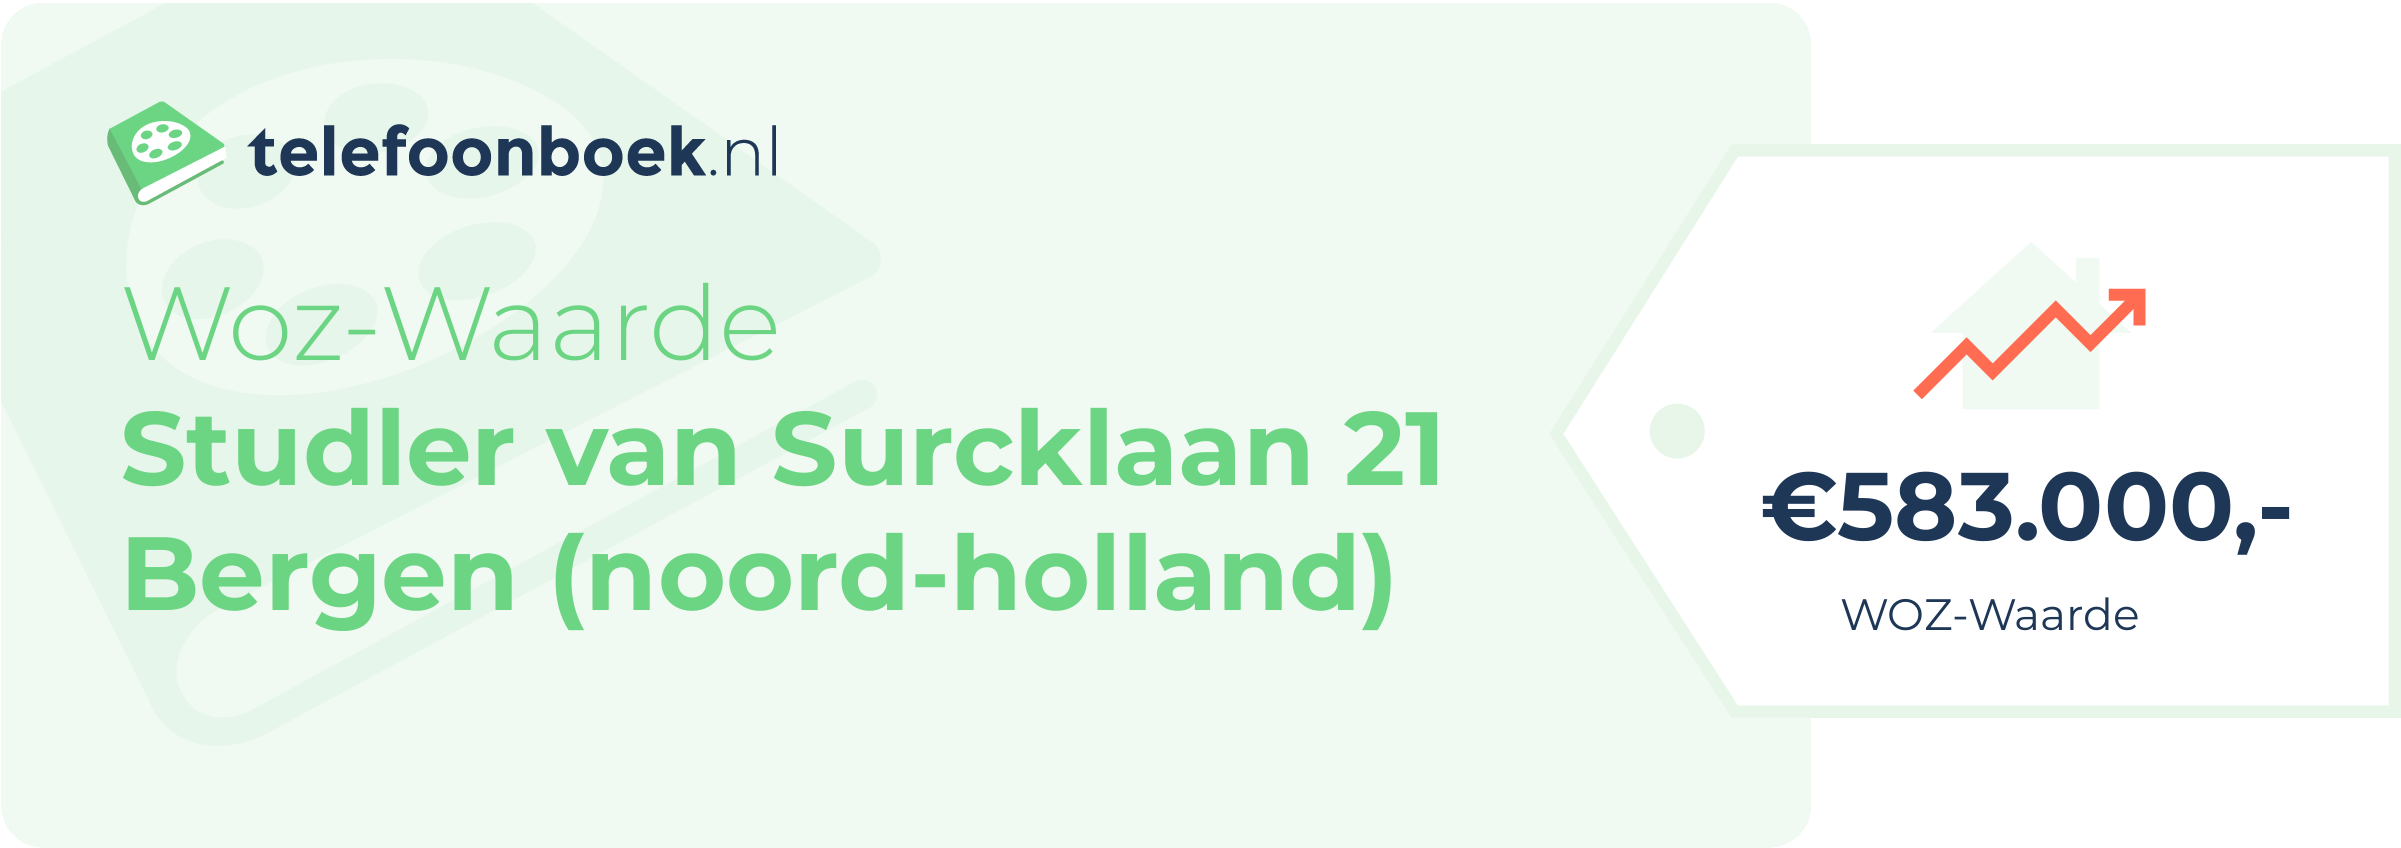 WOZ-waarde Studler Van Surcklaan 21 Bergen (Noord-Holland)